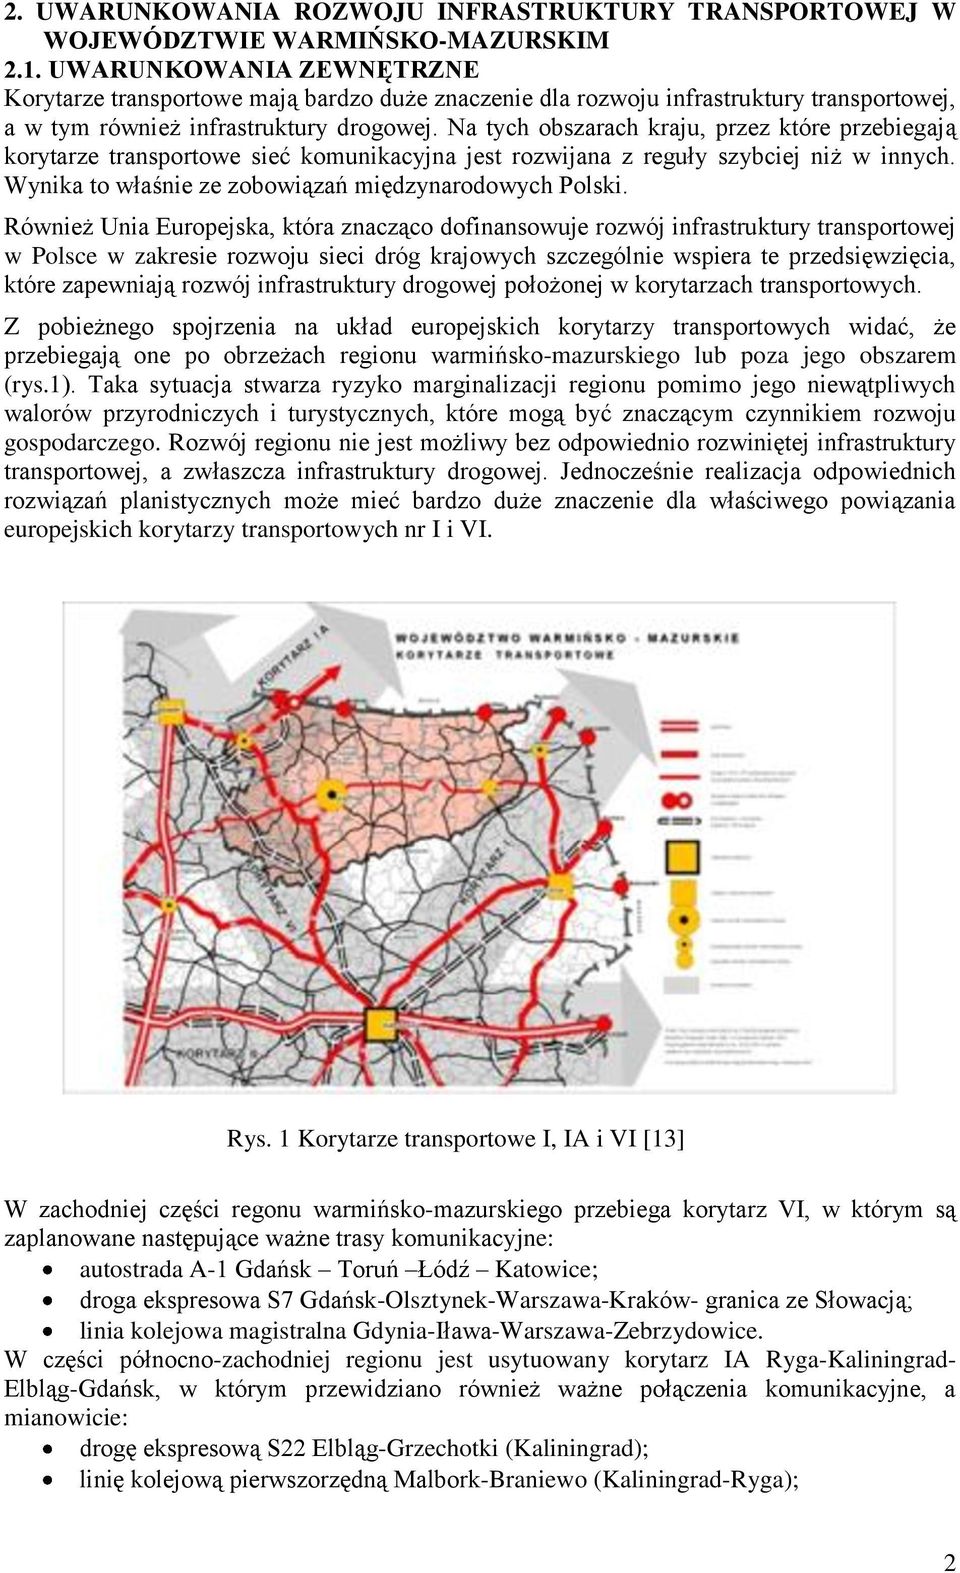 Na tych obszarach kraju, przez które przebiegają korytarze transportowe sieć komunikacyjna jest rozwijana z reguły szybciej niż w innych. Wynika to właśnie ze zobowiązań międzynarodowych Polski.